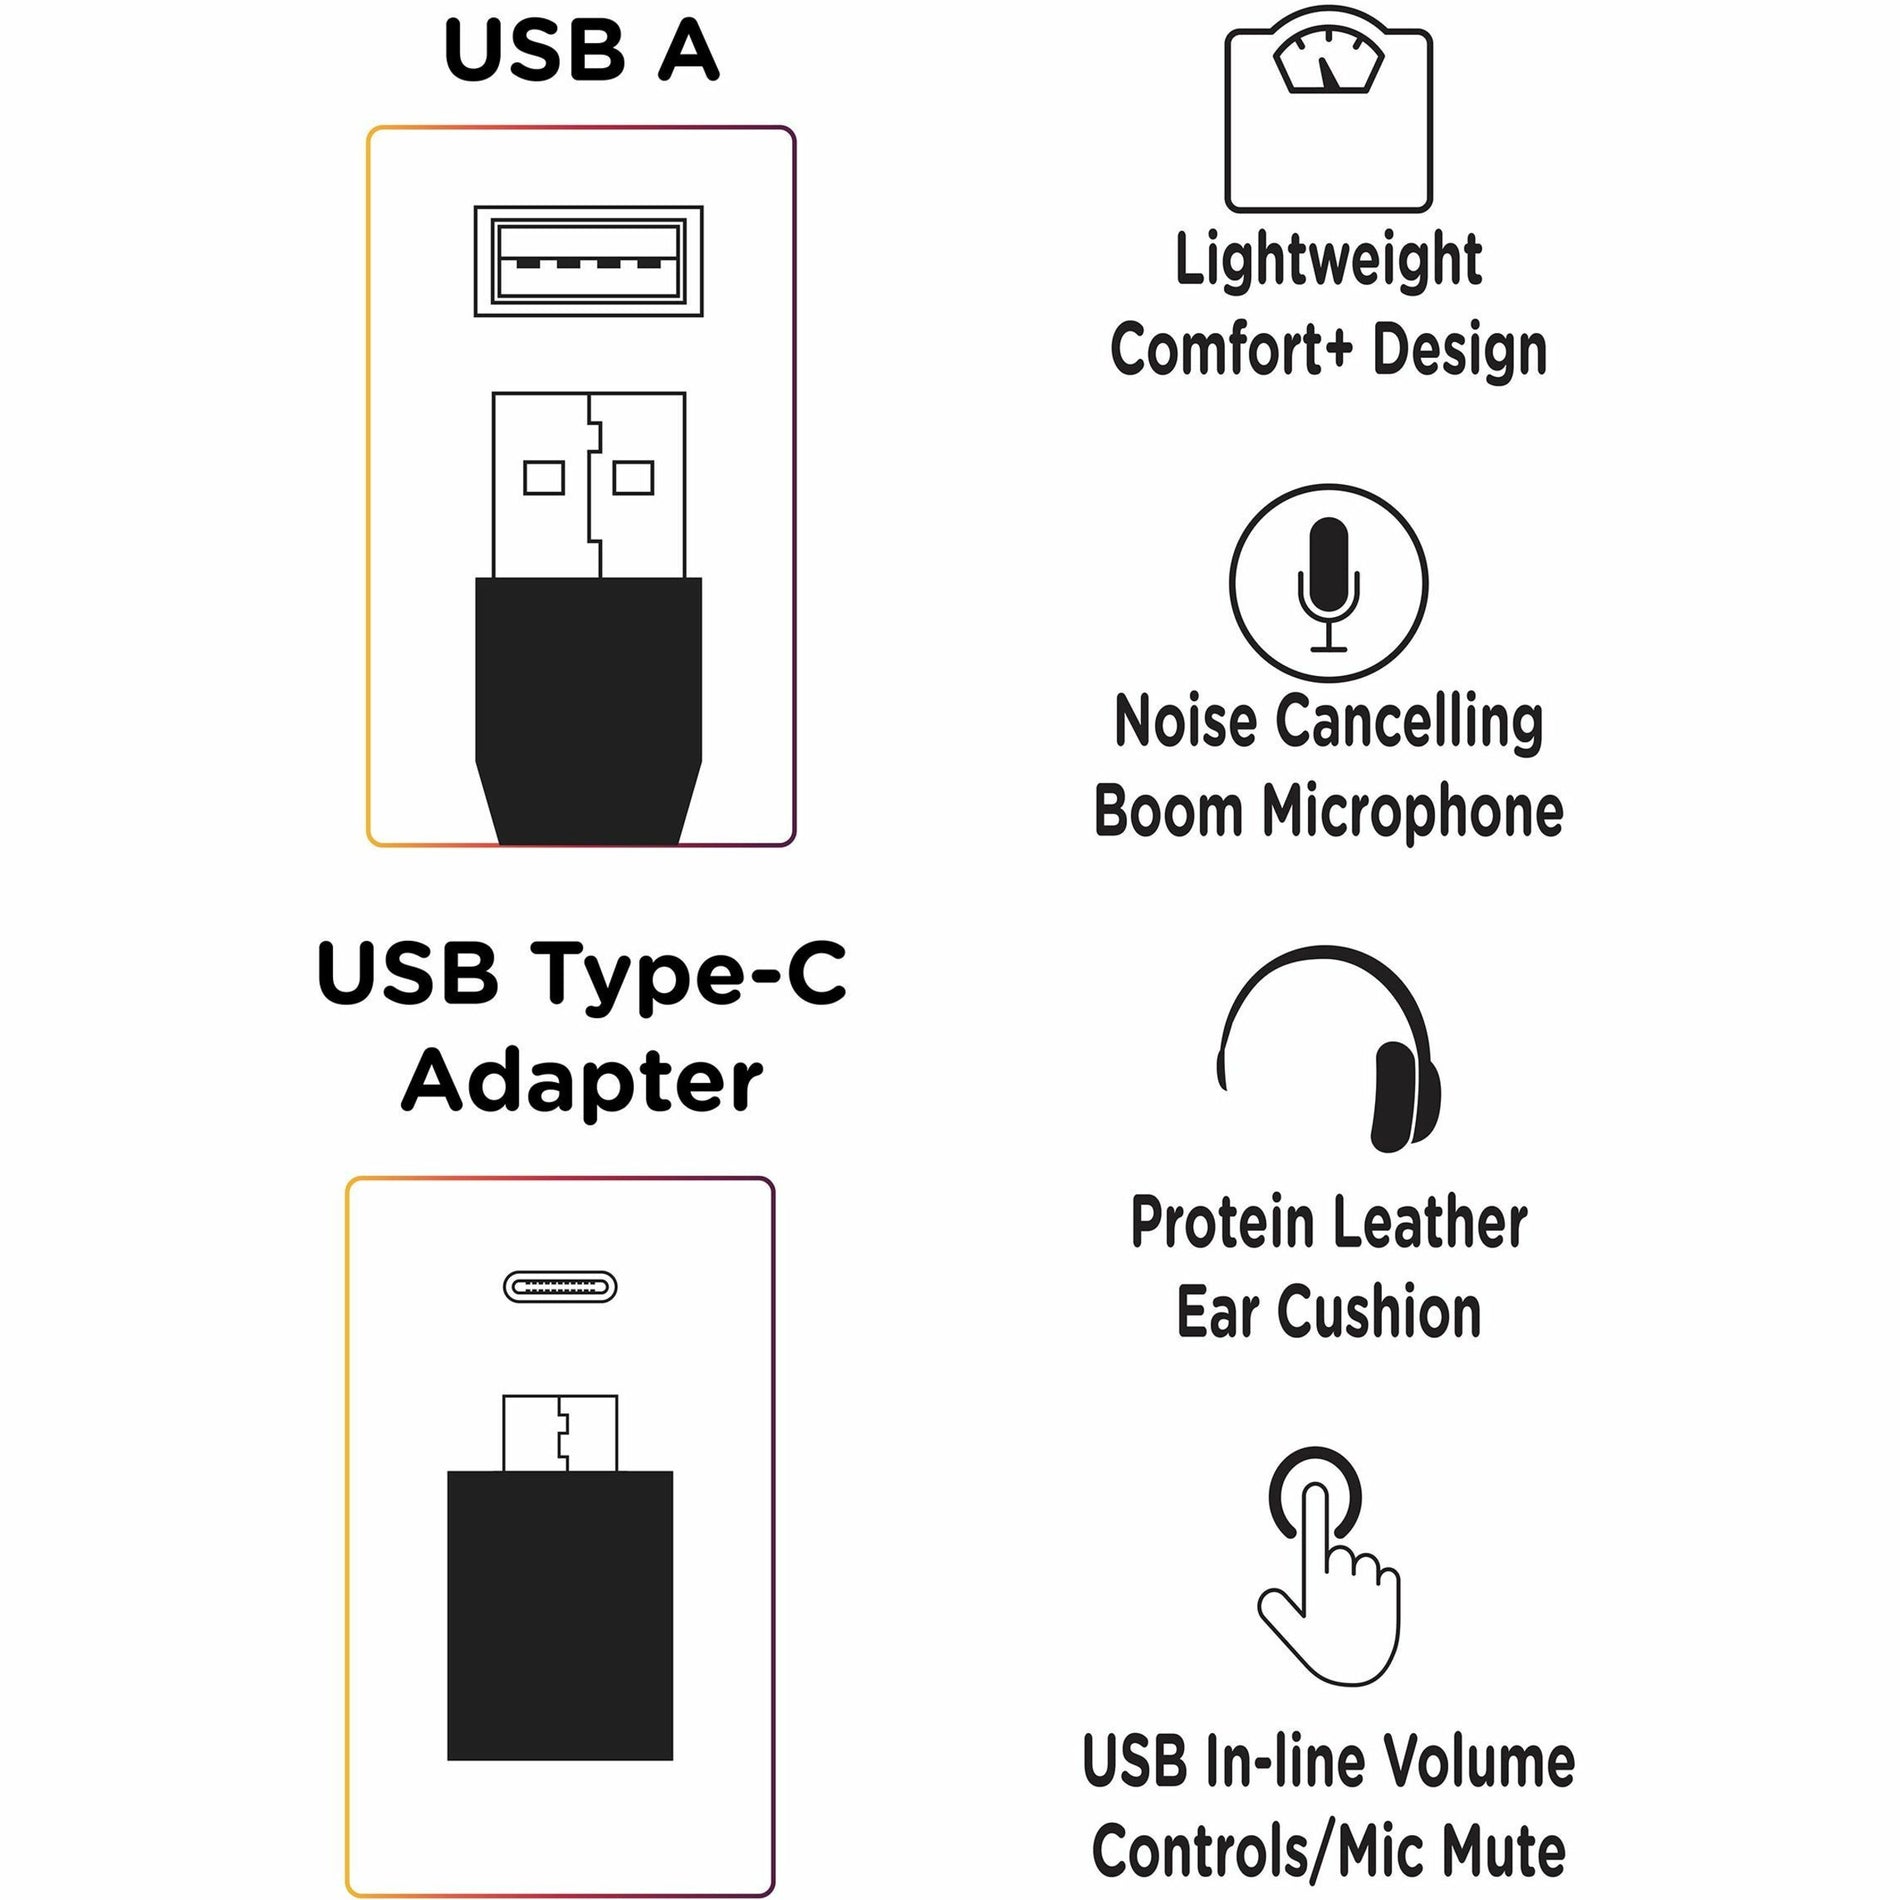 مورفيوس 360 HS5200MU سماعة رأس USB مونو مع ميكروفون بوم ، مريحة ، قابلة للتوصيل والتشغيل ، خفيفة الوزن العلامة التجارية: مورفيوس